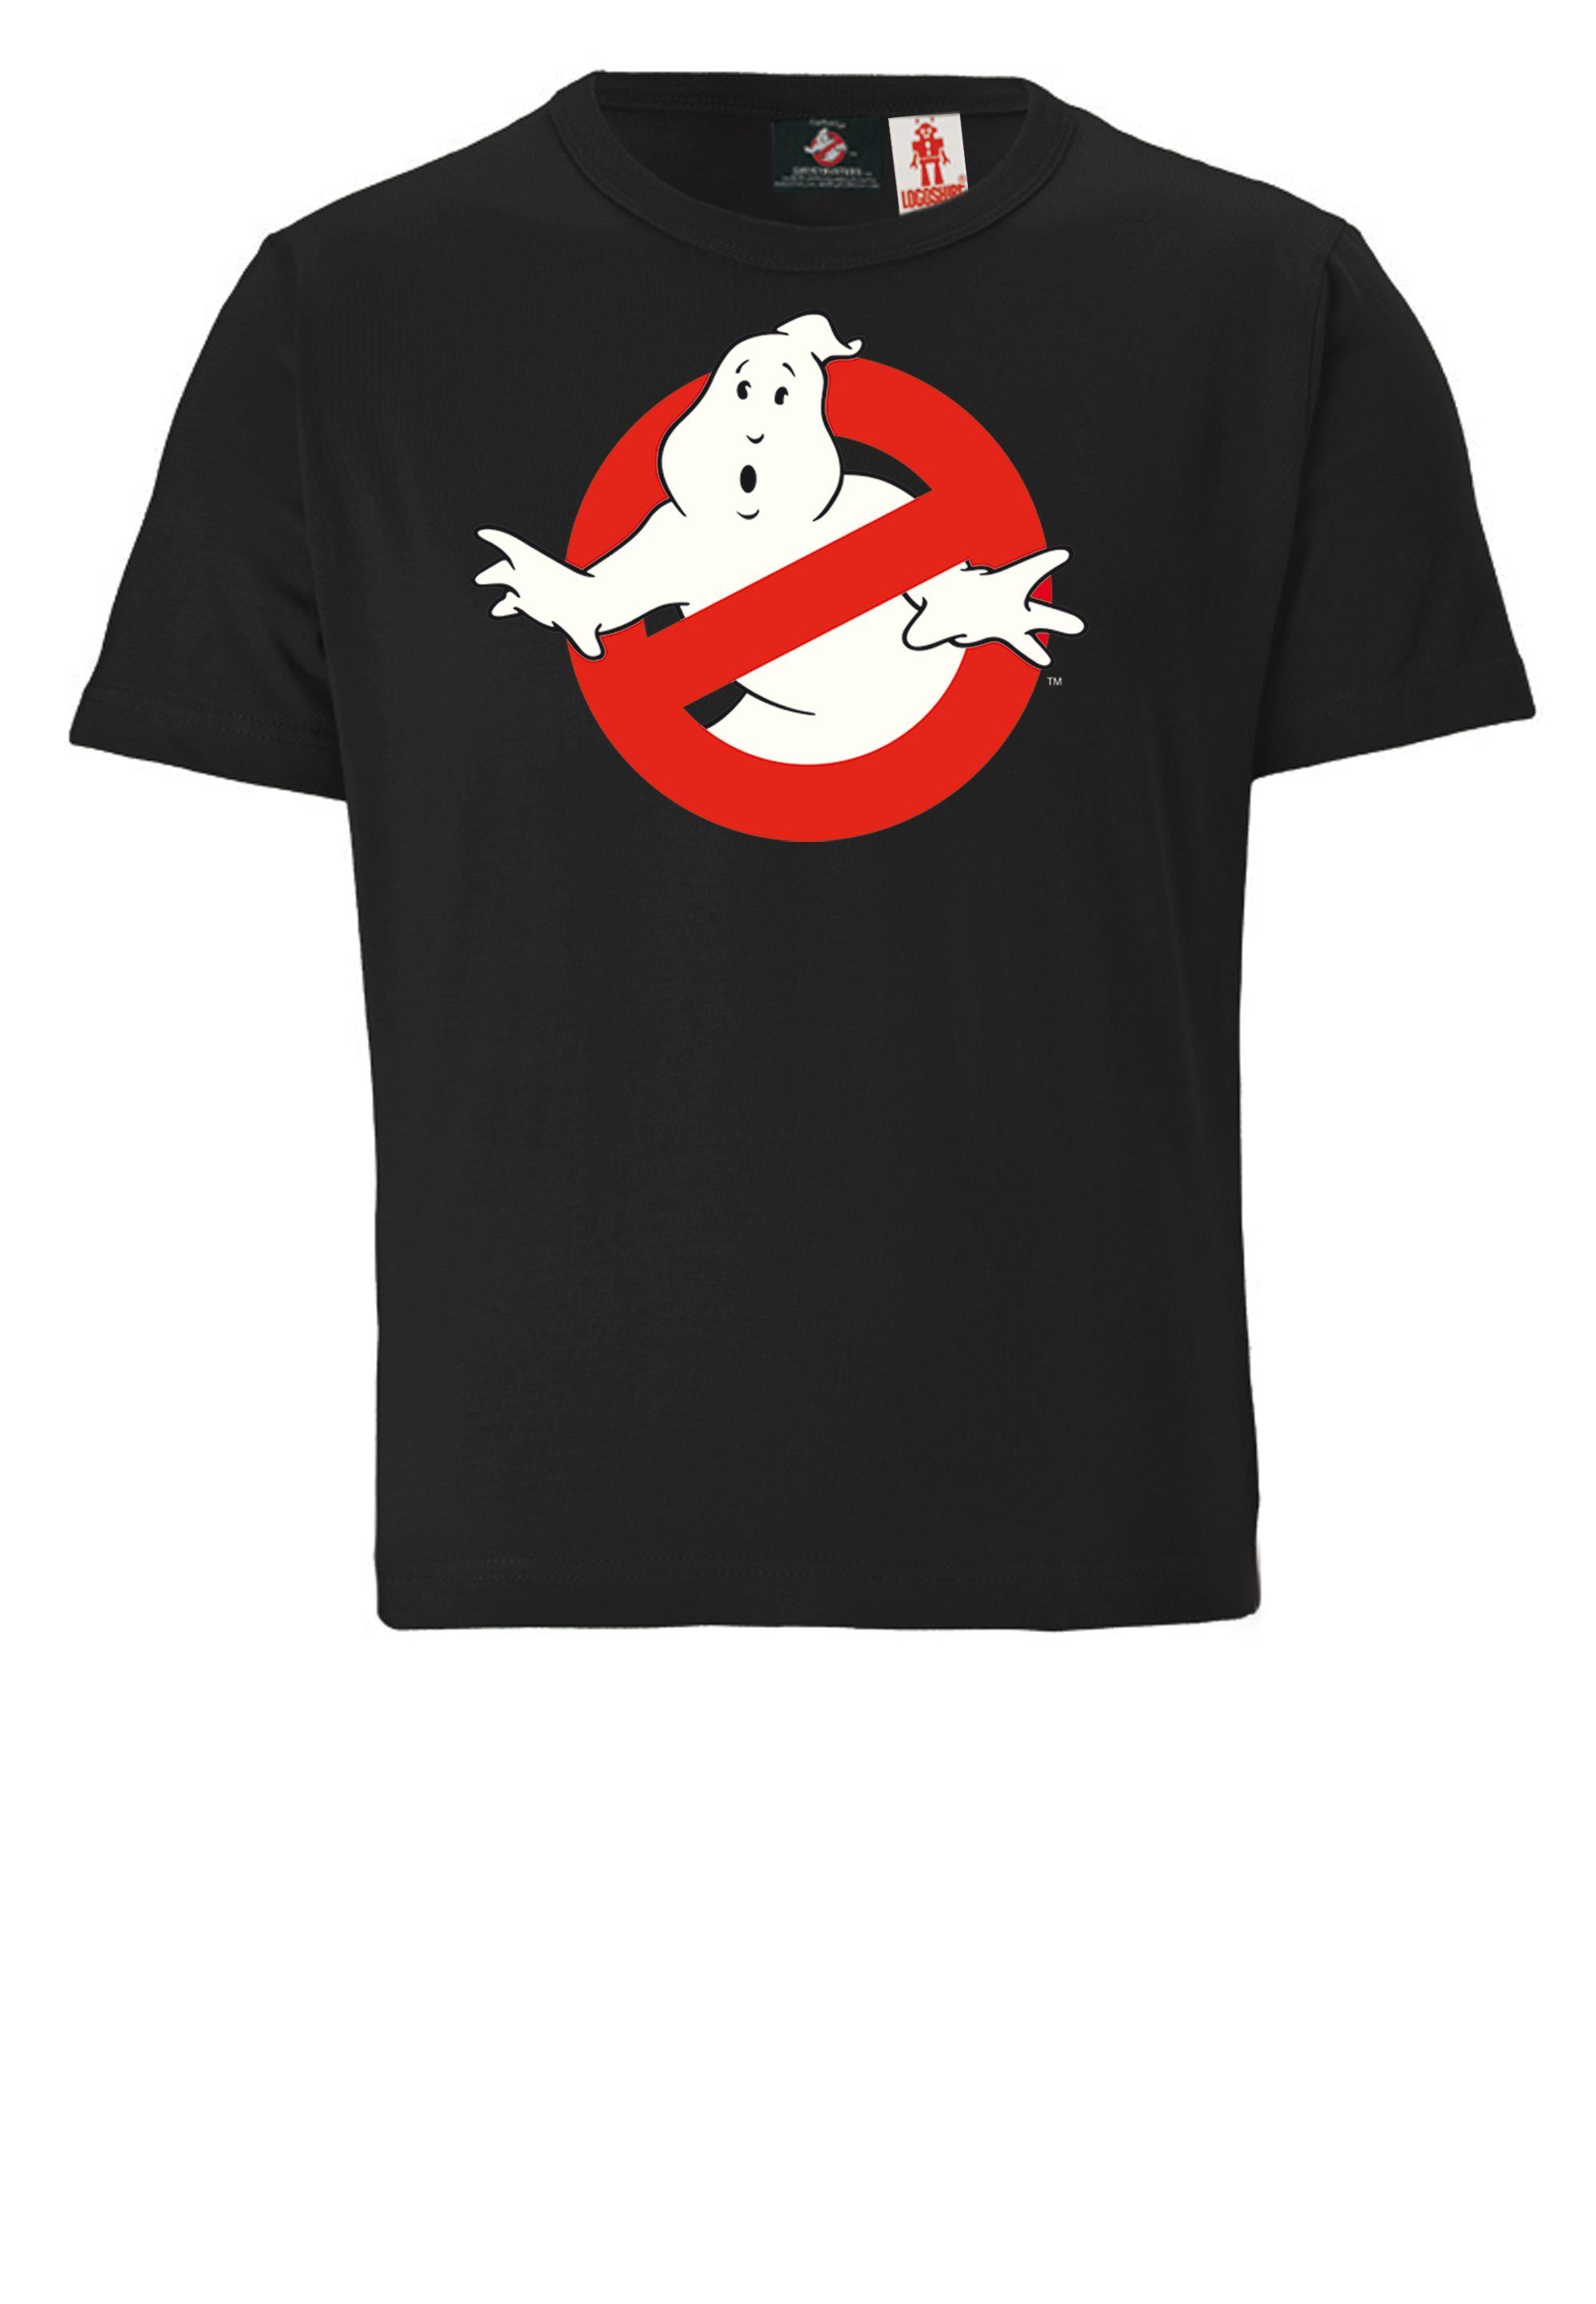 LOGOSHIRT T-Shirt mit lizenziertem Design Ghostbusters